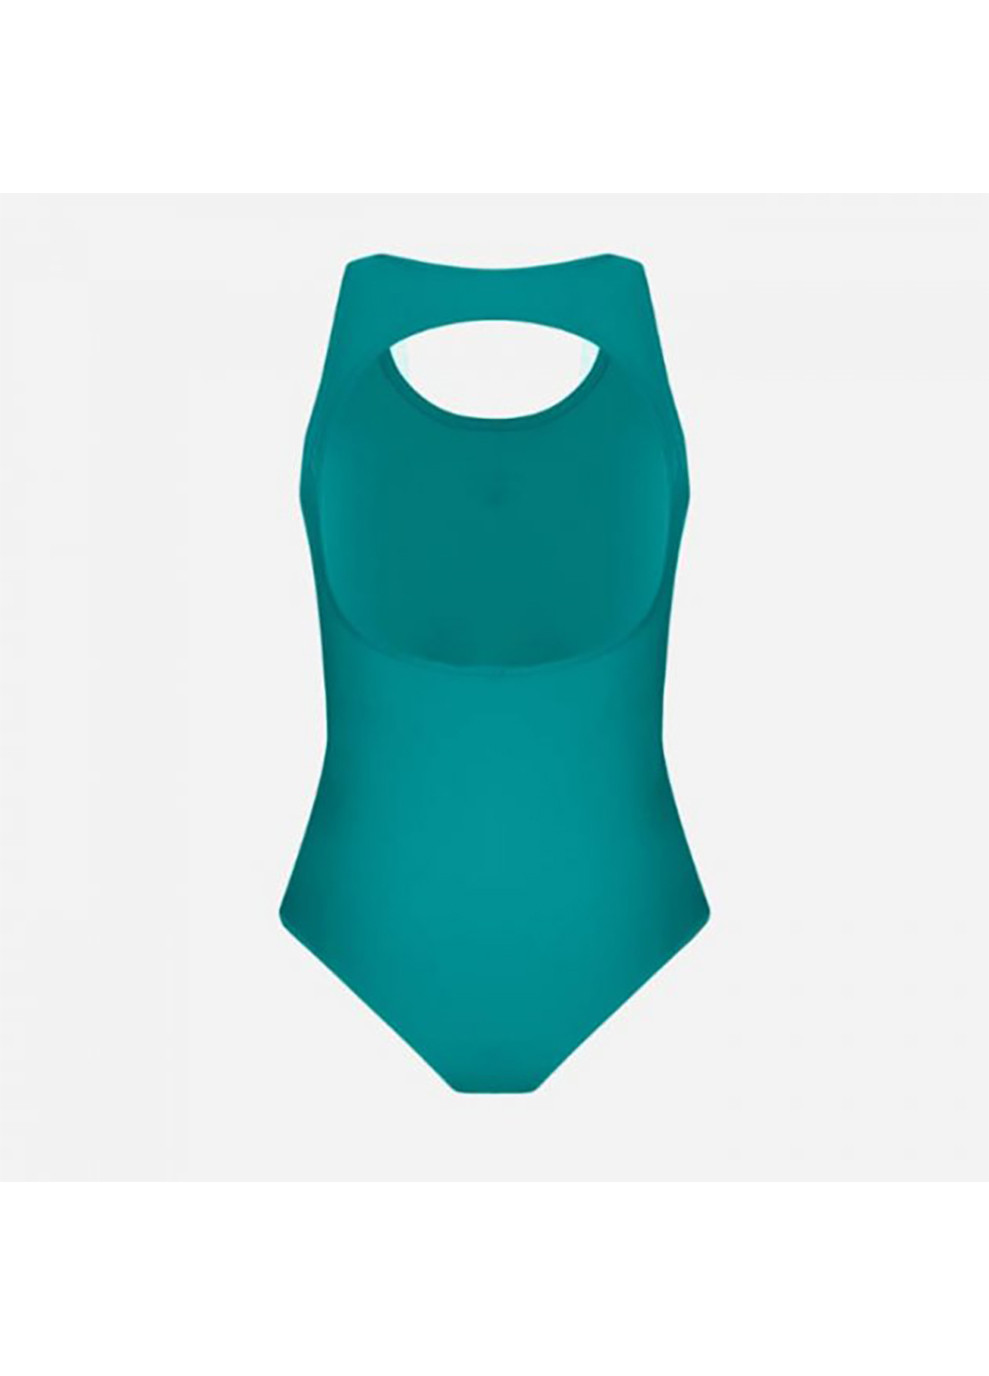 Зеленый демисезонный купальник слитный женский solid o back swimsuit зеленый Arena